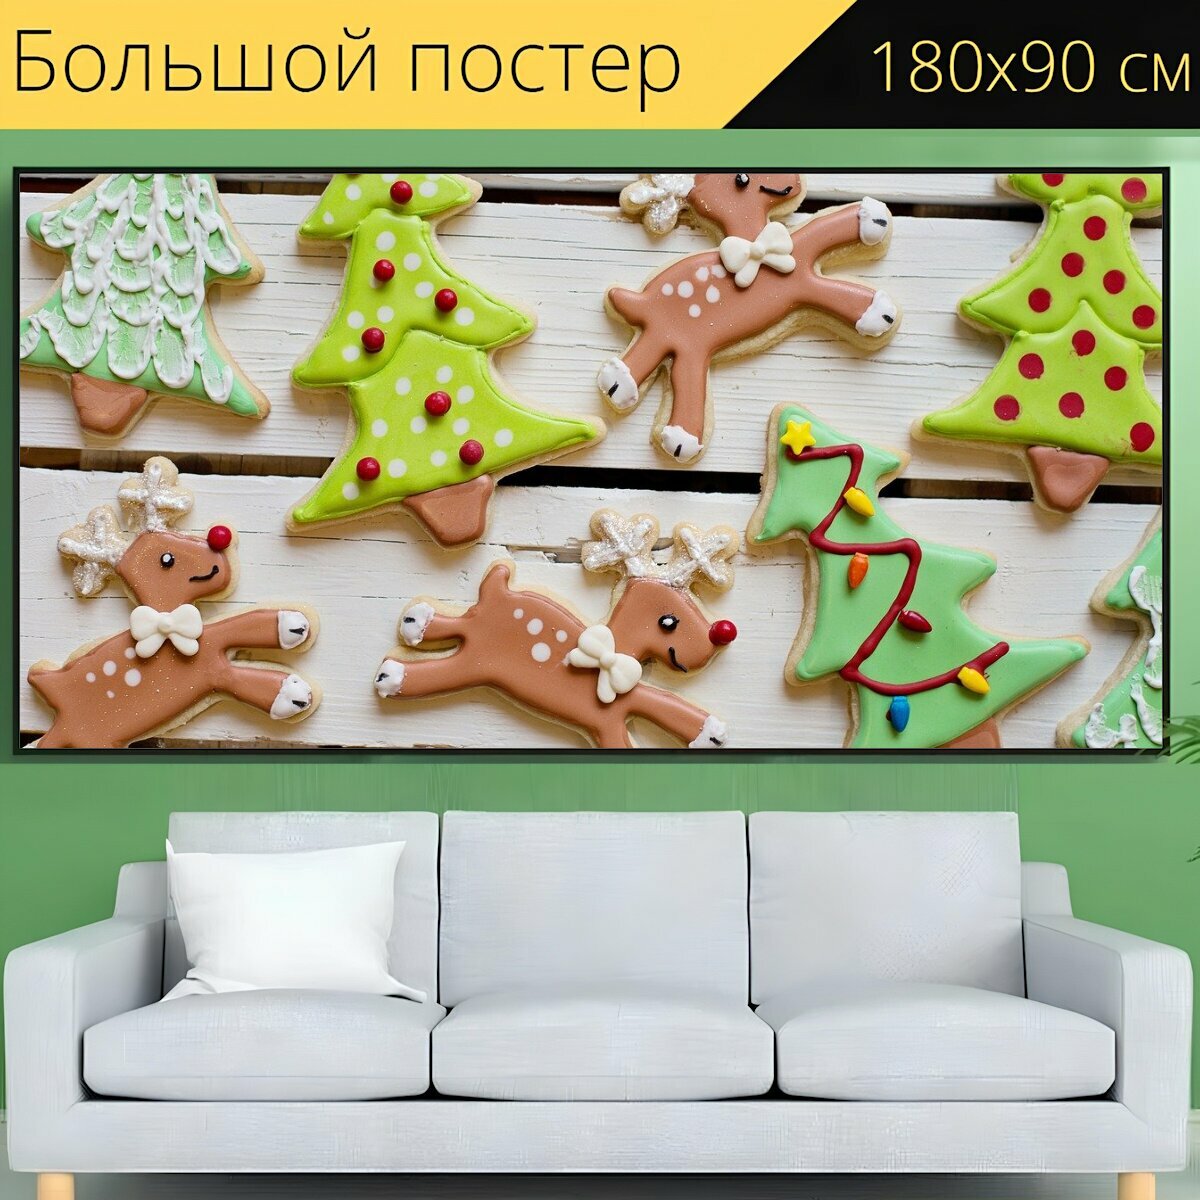 Большой постер "Рождественское печенье, сладости, рождество" 180 x 90 см. для интерьера